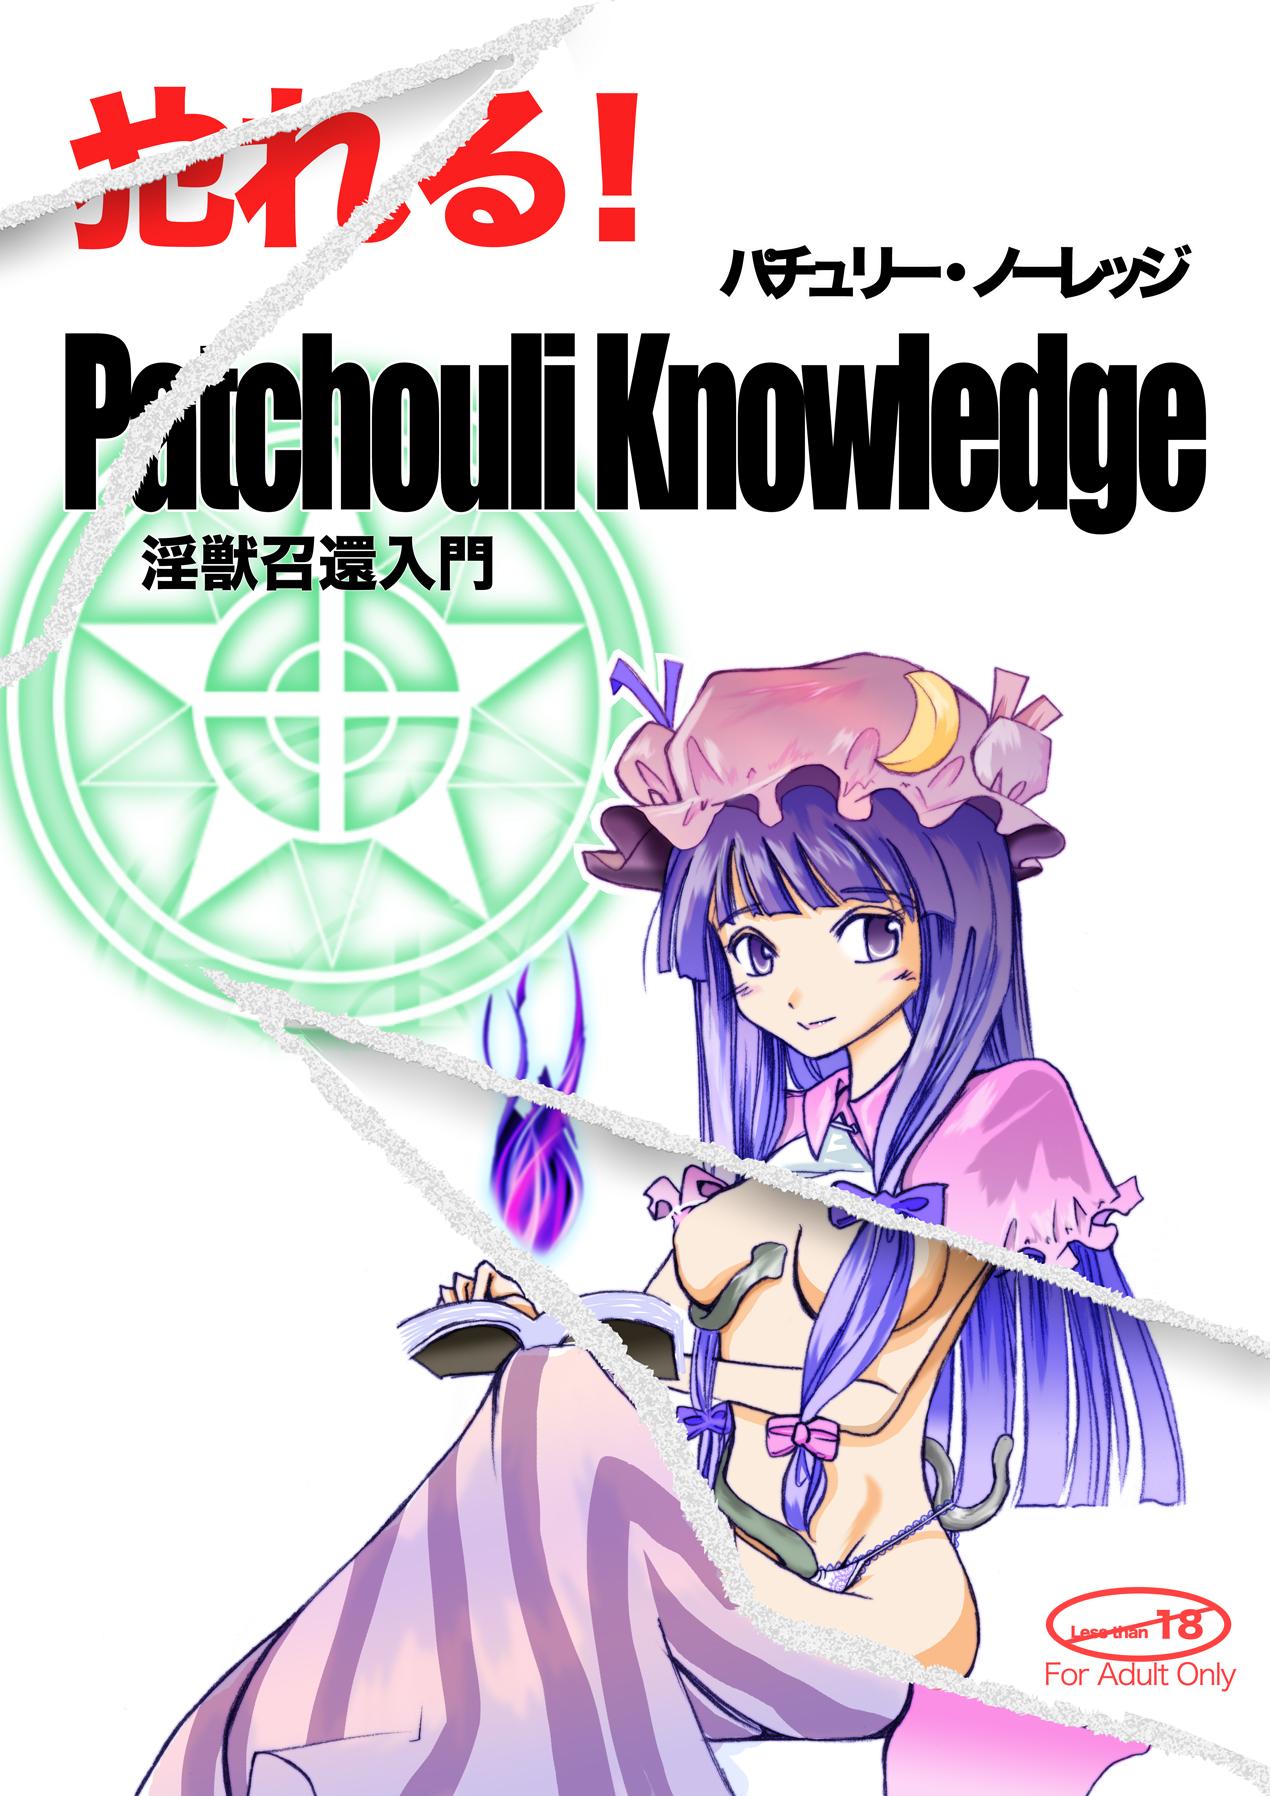 Yareru! Patchouli knowledge 0